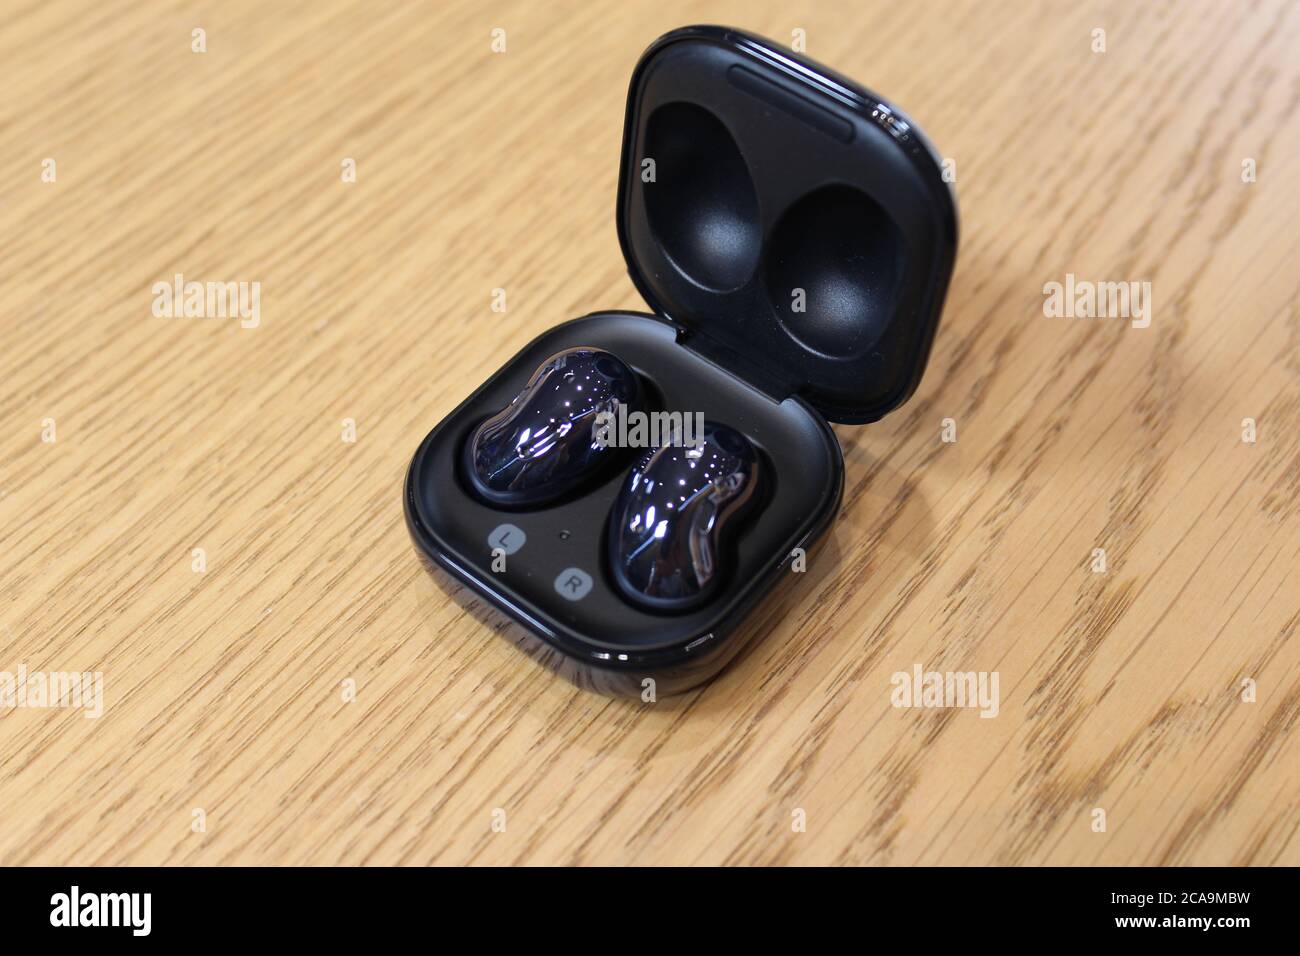 Die Galaxy Buds Live Wireless-Kopfhörer, die mit 5G-Unterstützung kommt, von Samsung vorgestellt, wie das Unternehmen würde "begrüßen die Gelegenheit", um den Aufbau der britischen helfen???s 5G-Netze nach der Entscheidung, Huawei zu verbieten, sagte ein britischer Geschäftsführer. Stockfoto